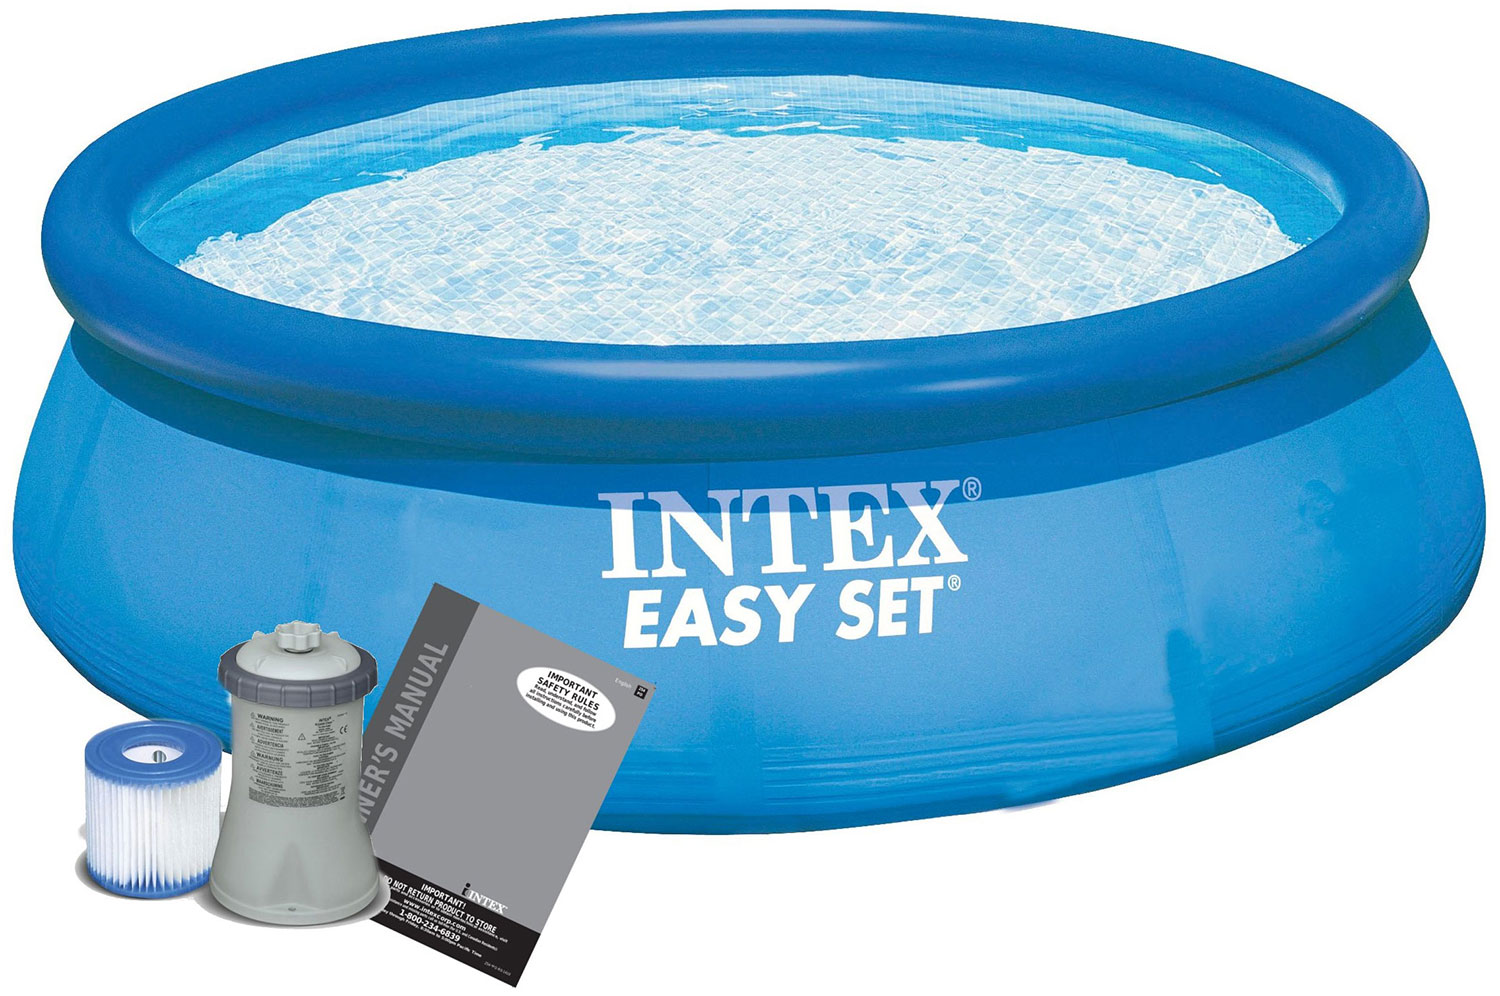 Надувной бассейн Intex Изи сет 396х84 см 28142NP фильтр для плавательного бассейна intex type h тип картридж для фильтра бассейна h 29007p